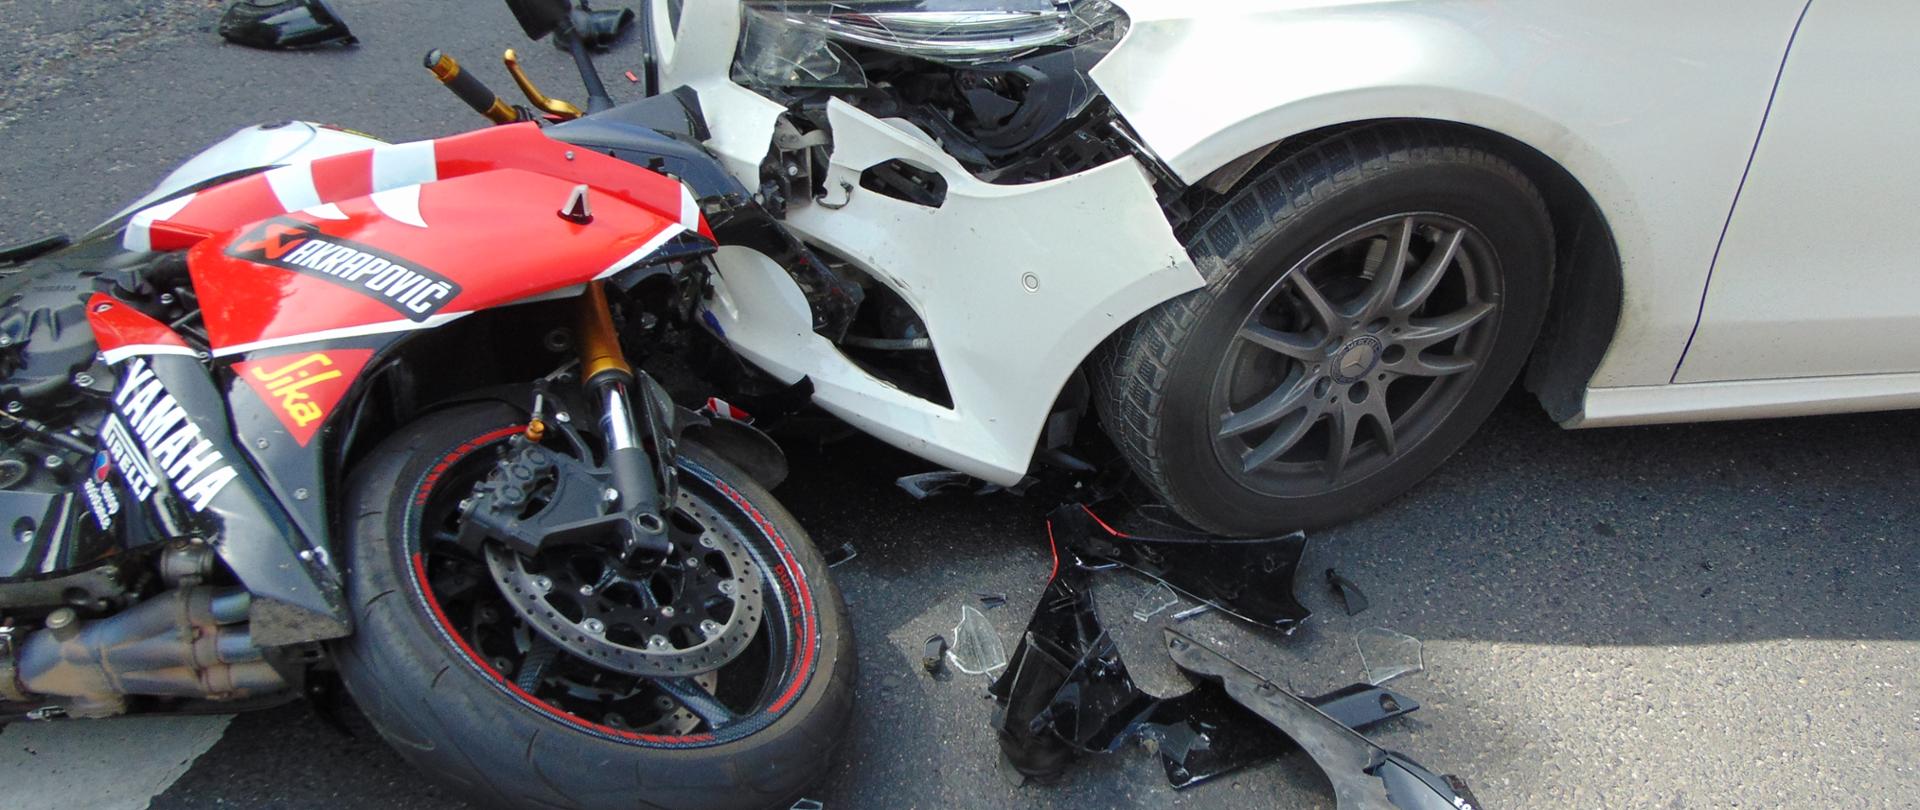 Na zdjęciu widać samochód osobowy i motocykl, które zderzyły się.